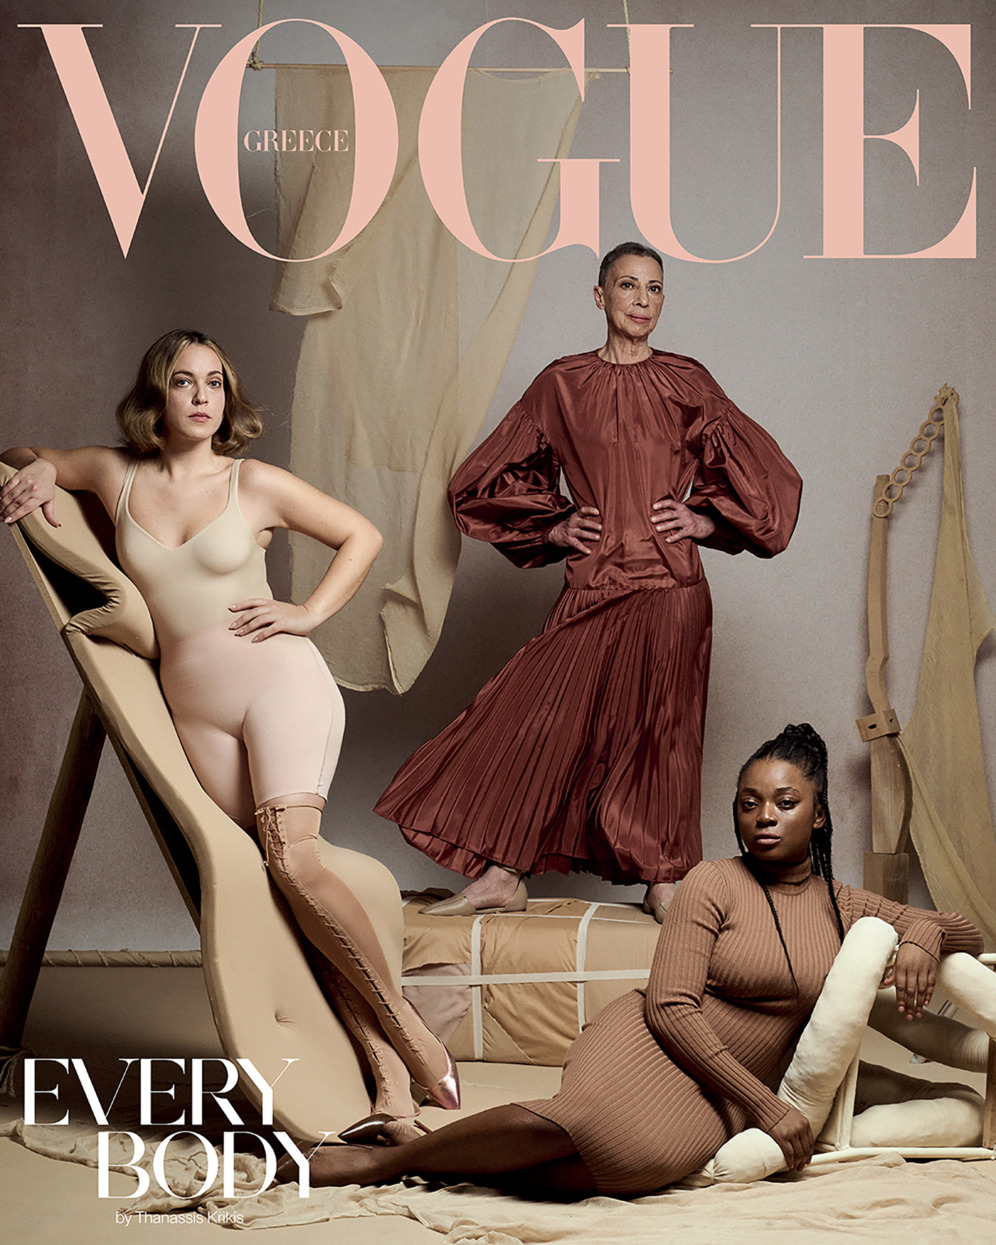 Vogue Greece | Every Body